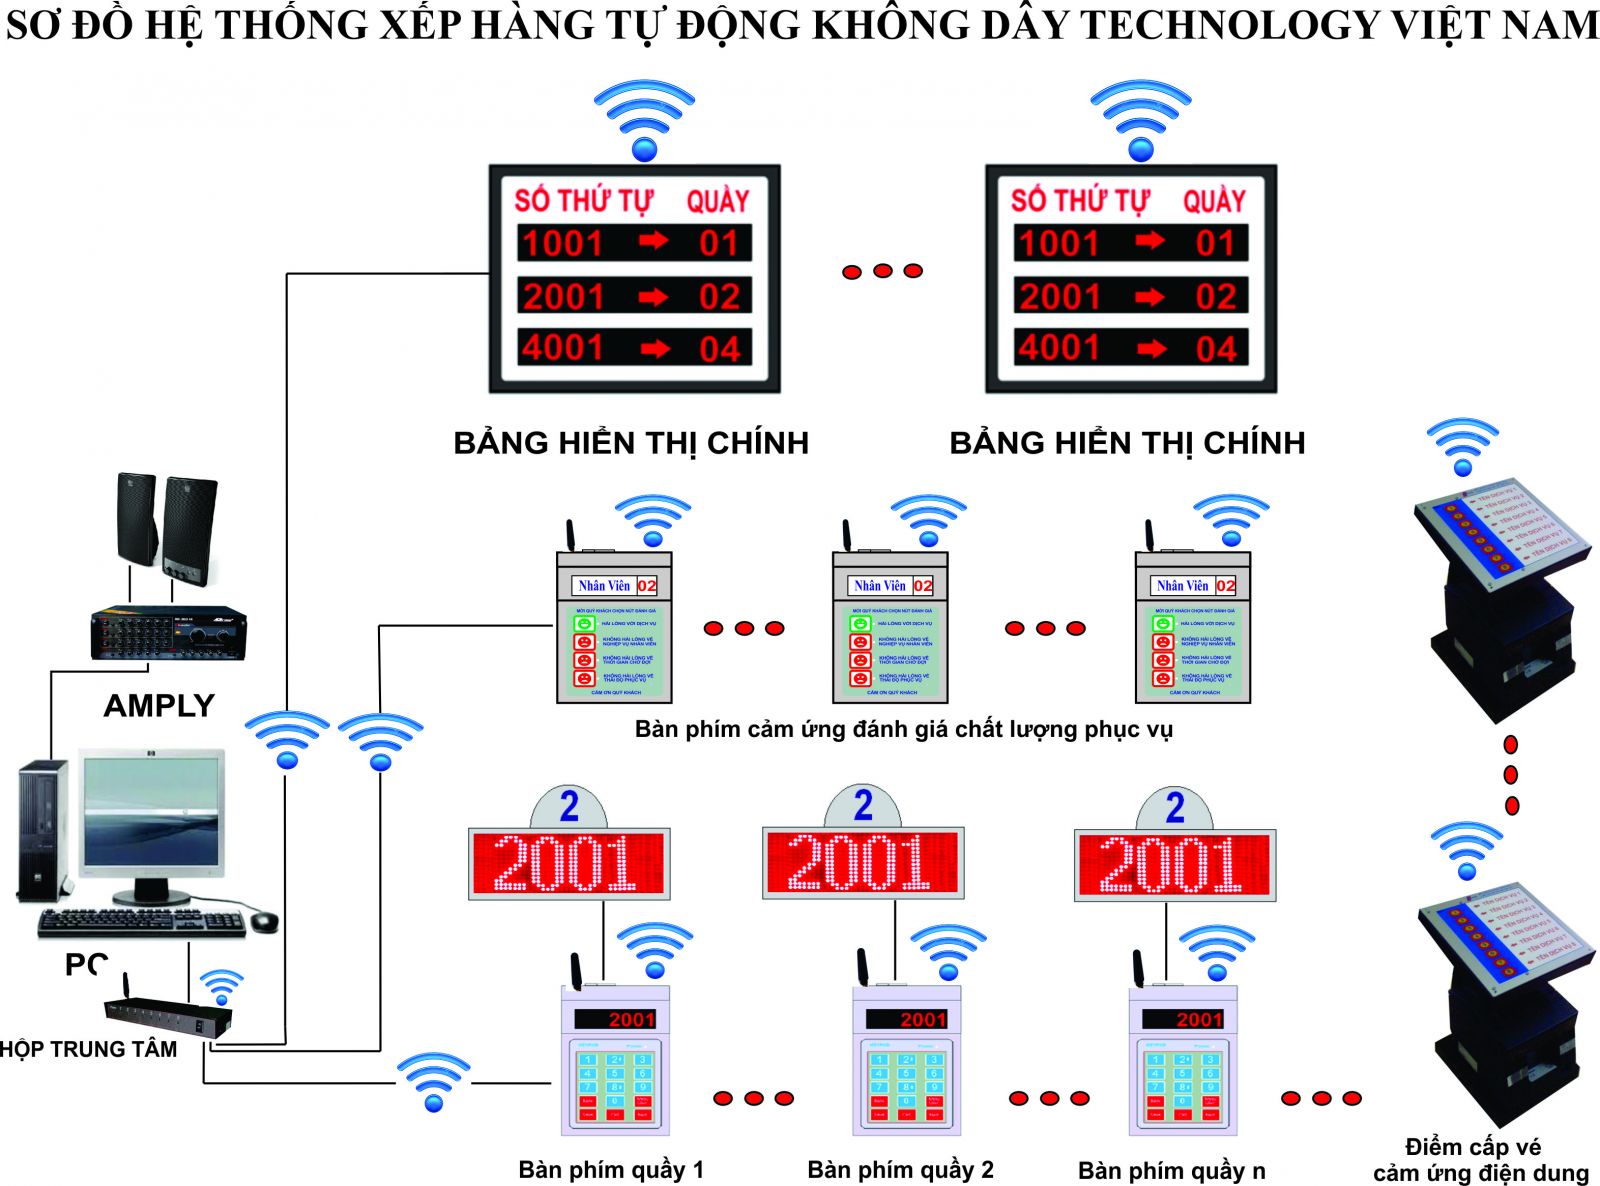 Hệ thống xếp hàng tự động không dây Technology Việt Nam